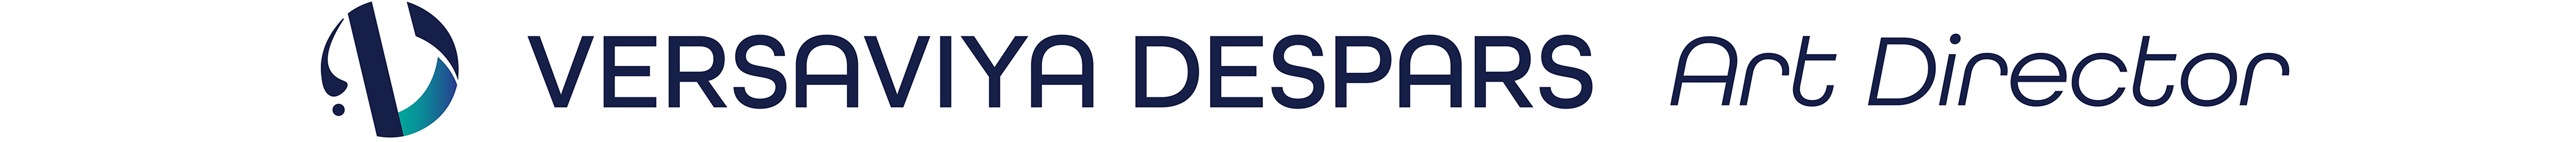 Versaviya Despars logo